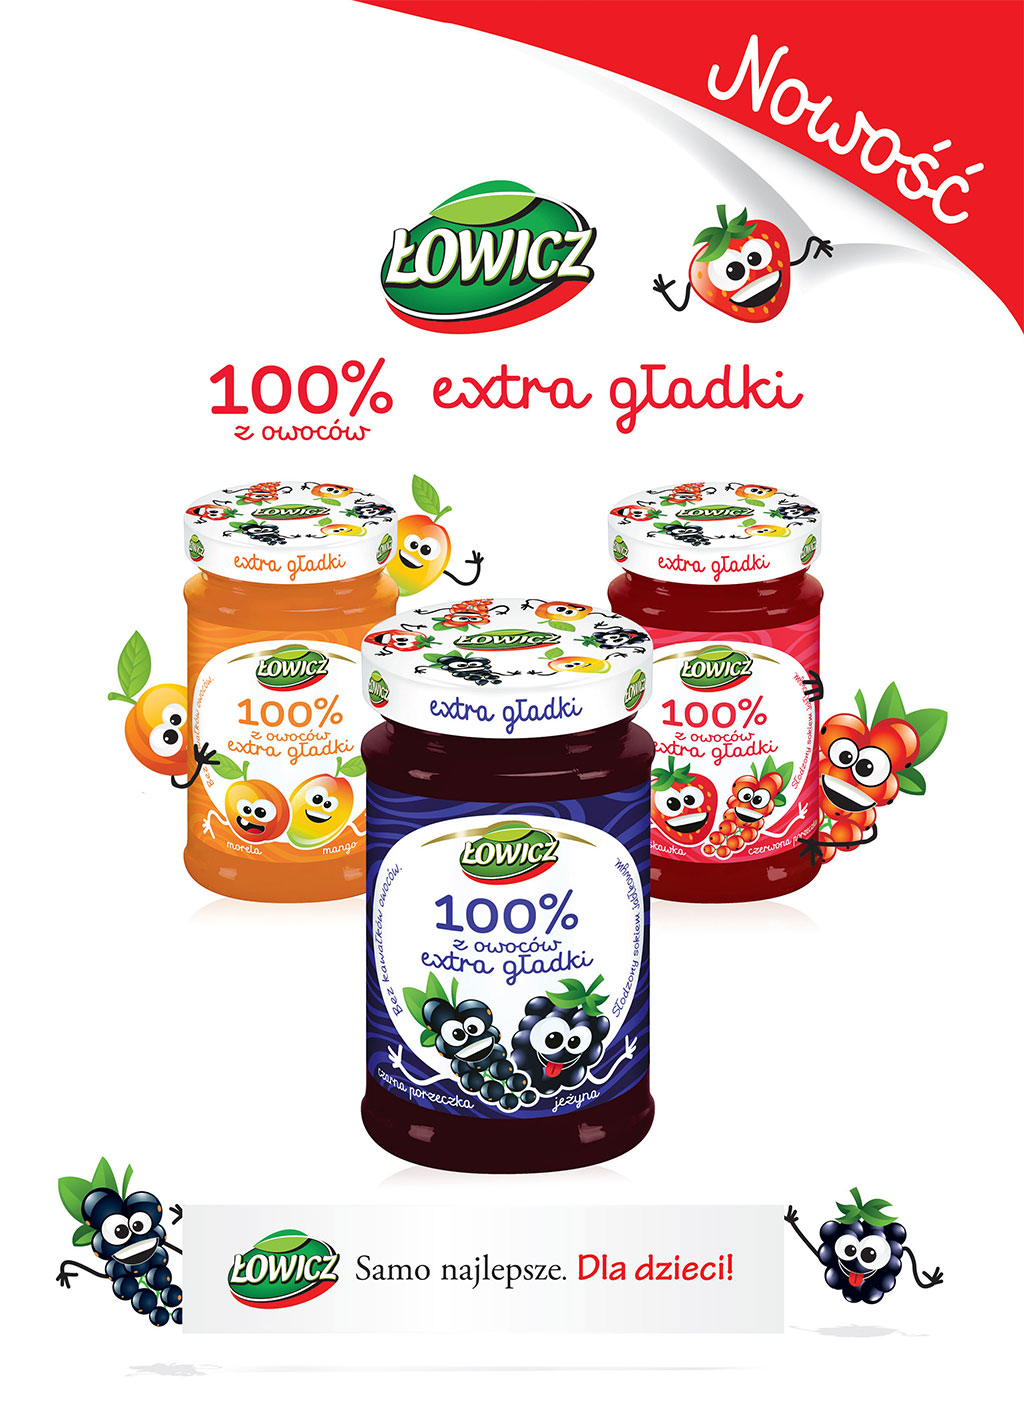 Rusza kampania Łowicz 100% z owoców extra gładki